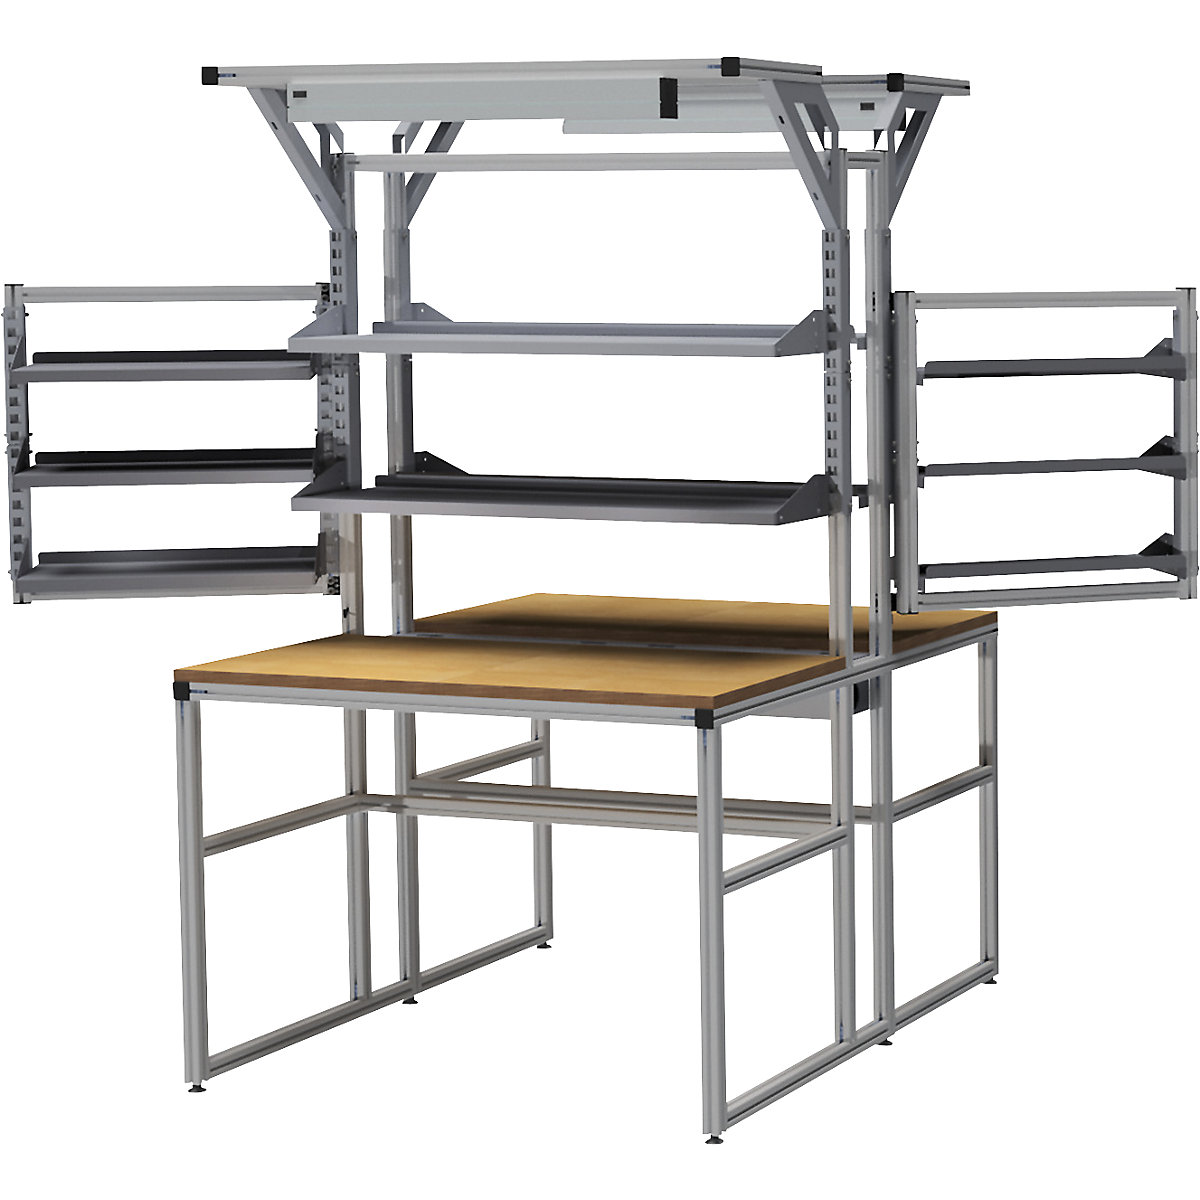 Stół warsztatowy aluminiowy workalu&reg; z modułem systemowym, dwustronny - bedrunka hirth